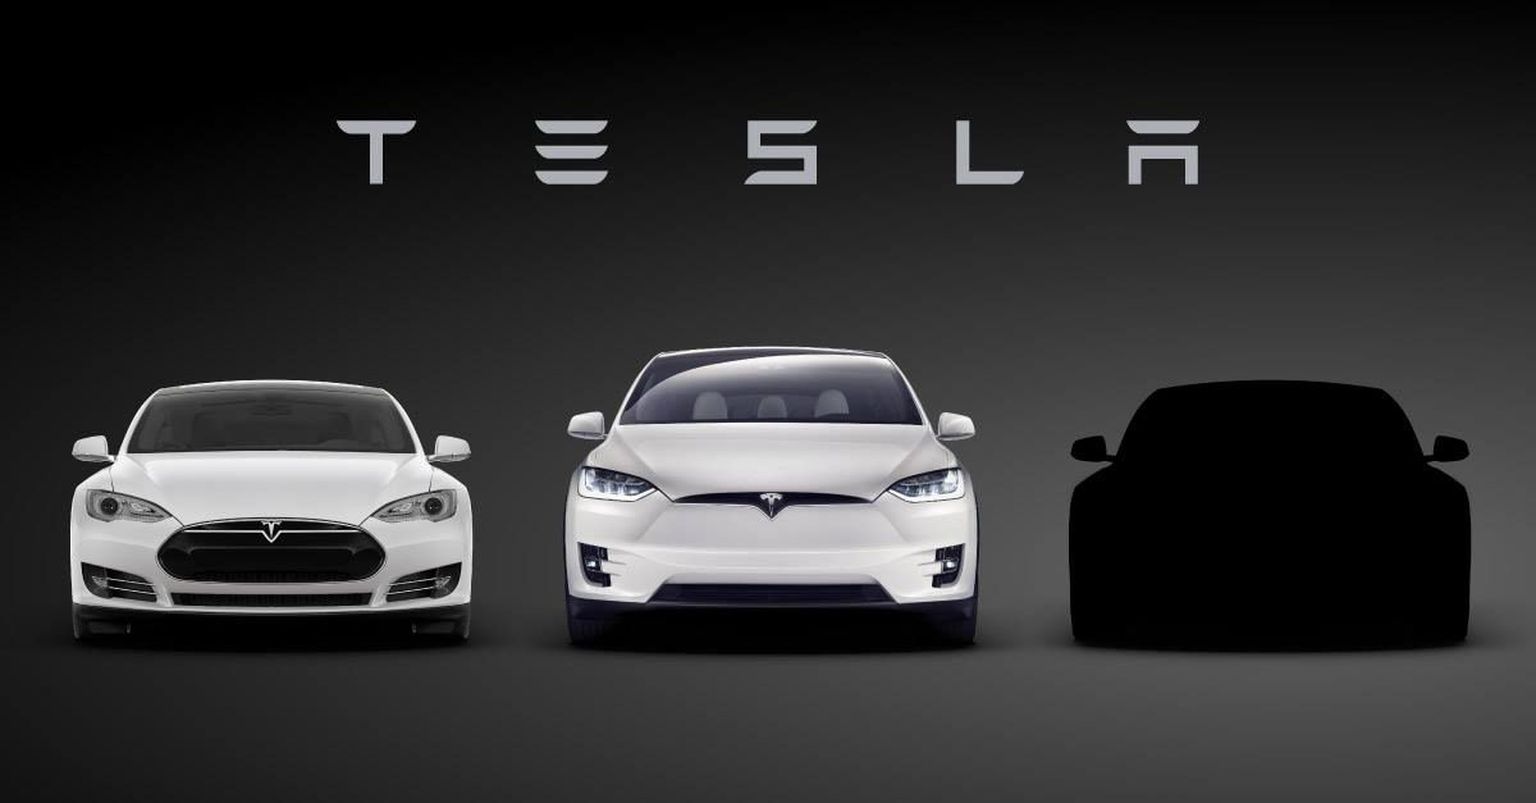 Автомобиль Tesla. Иллюстративное фото.